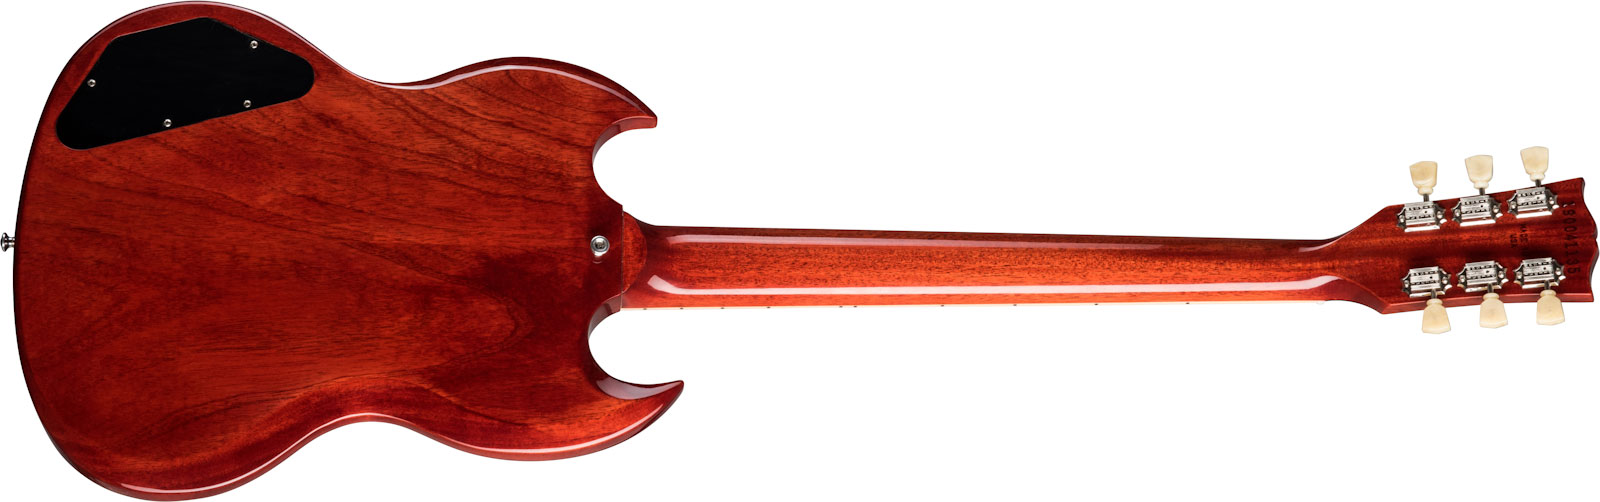 Gibson Sg Standard '61 Sideways Vibrola Original 2h Ht Rw - Vintage Cherry - Retro-rock elektrische gitaar - Variation 1